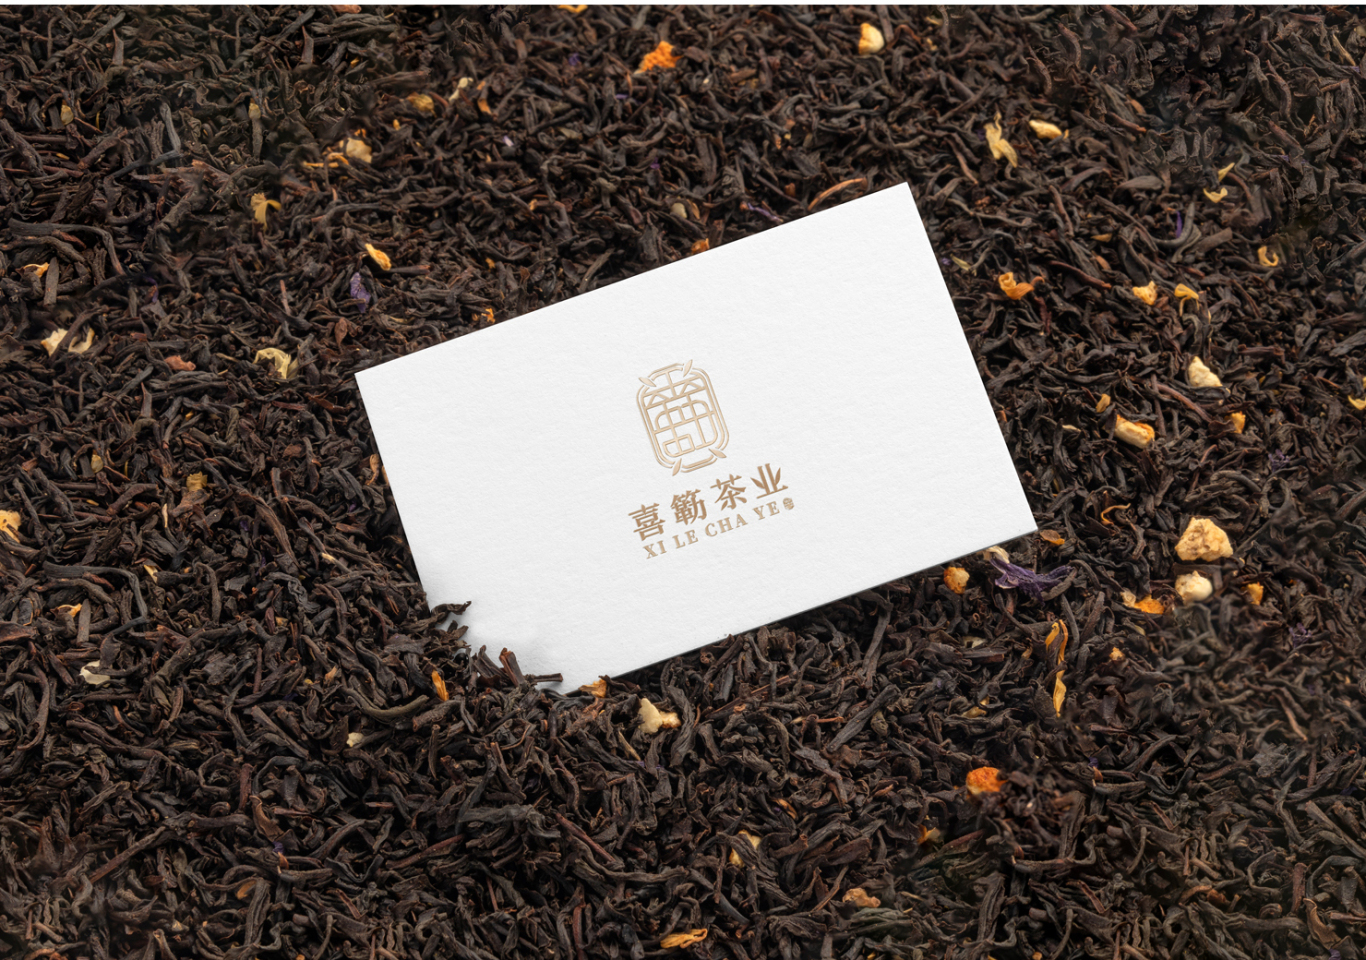 喜簕茶叶—茶叶品牌形象设计图11